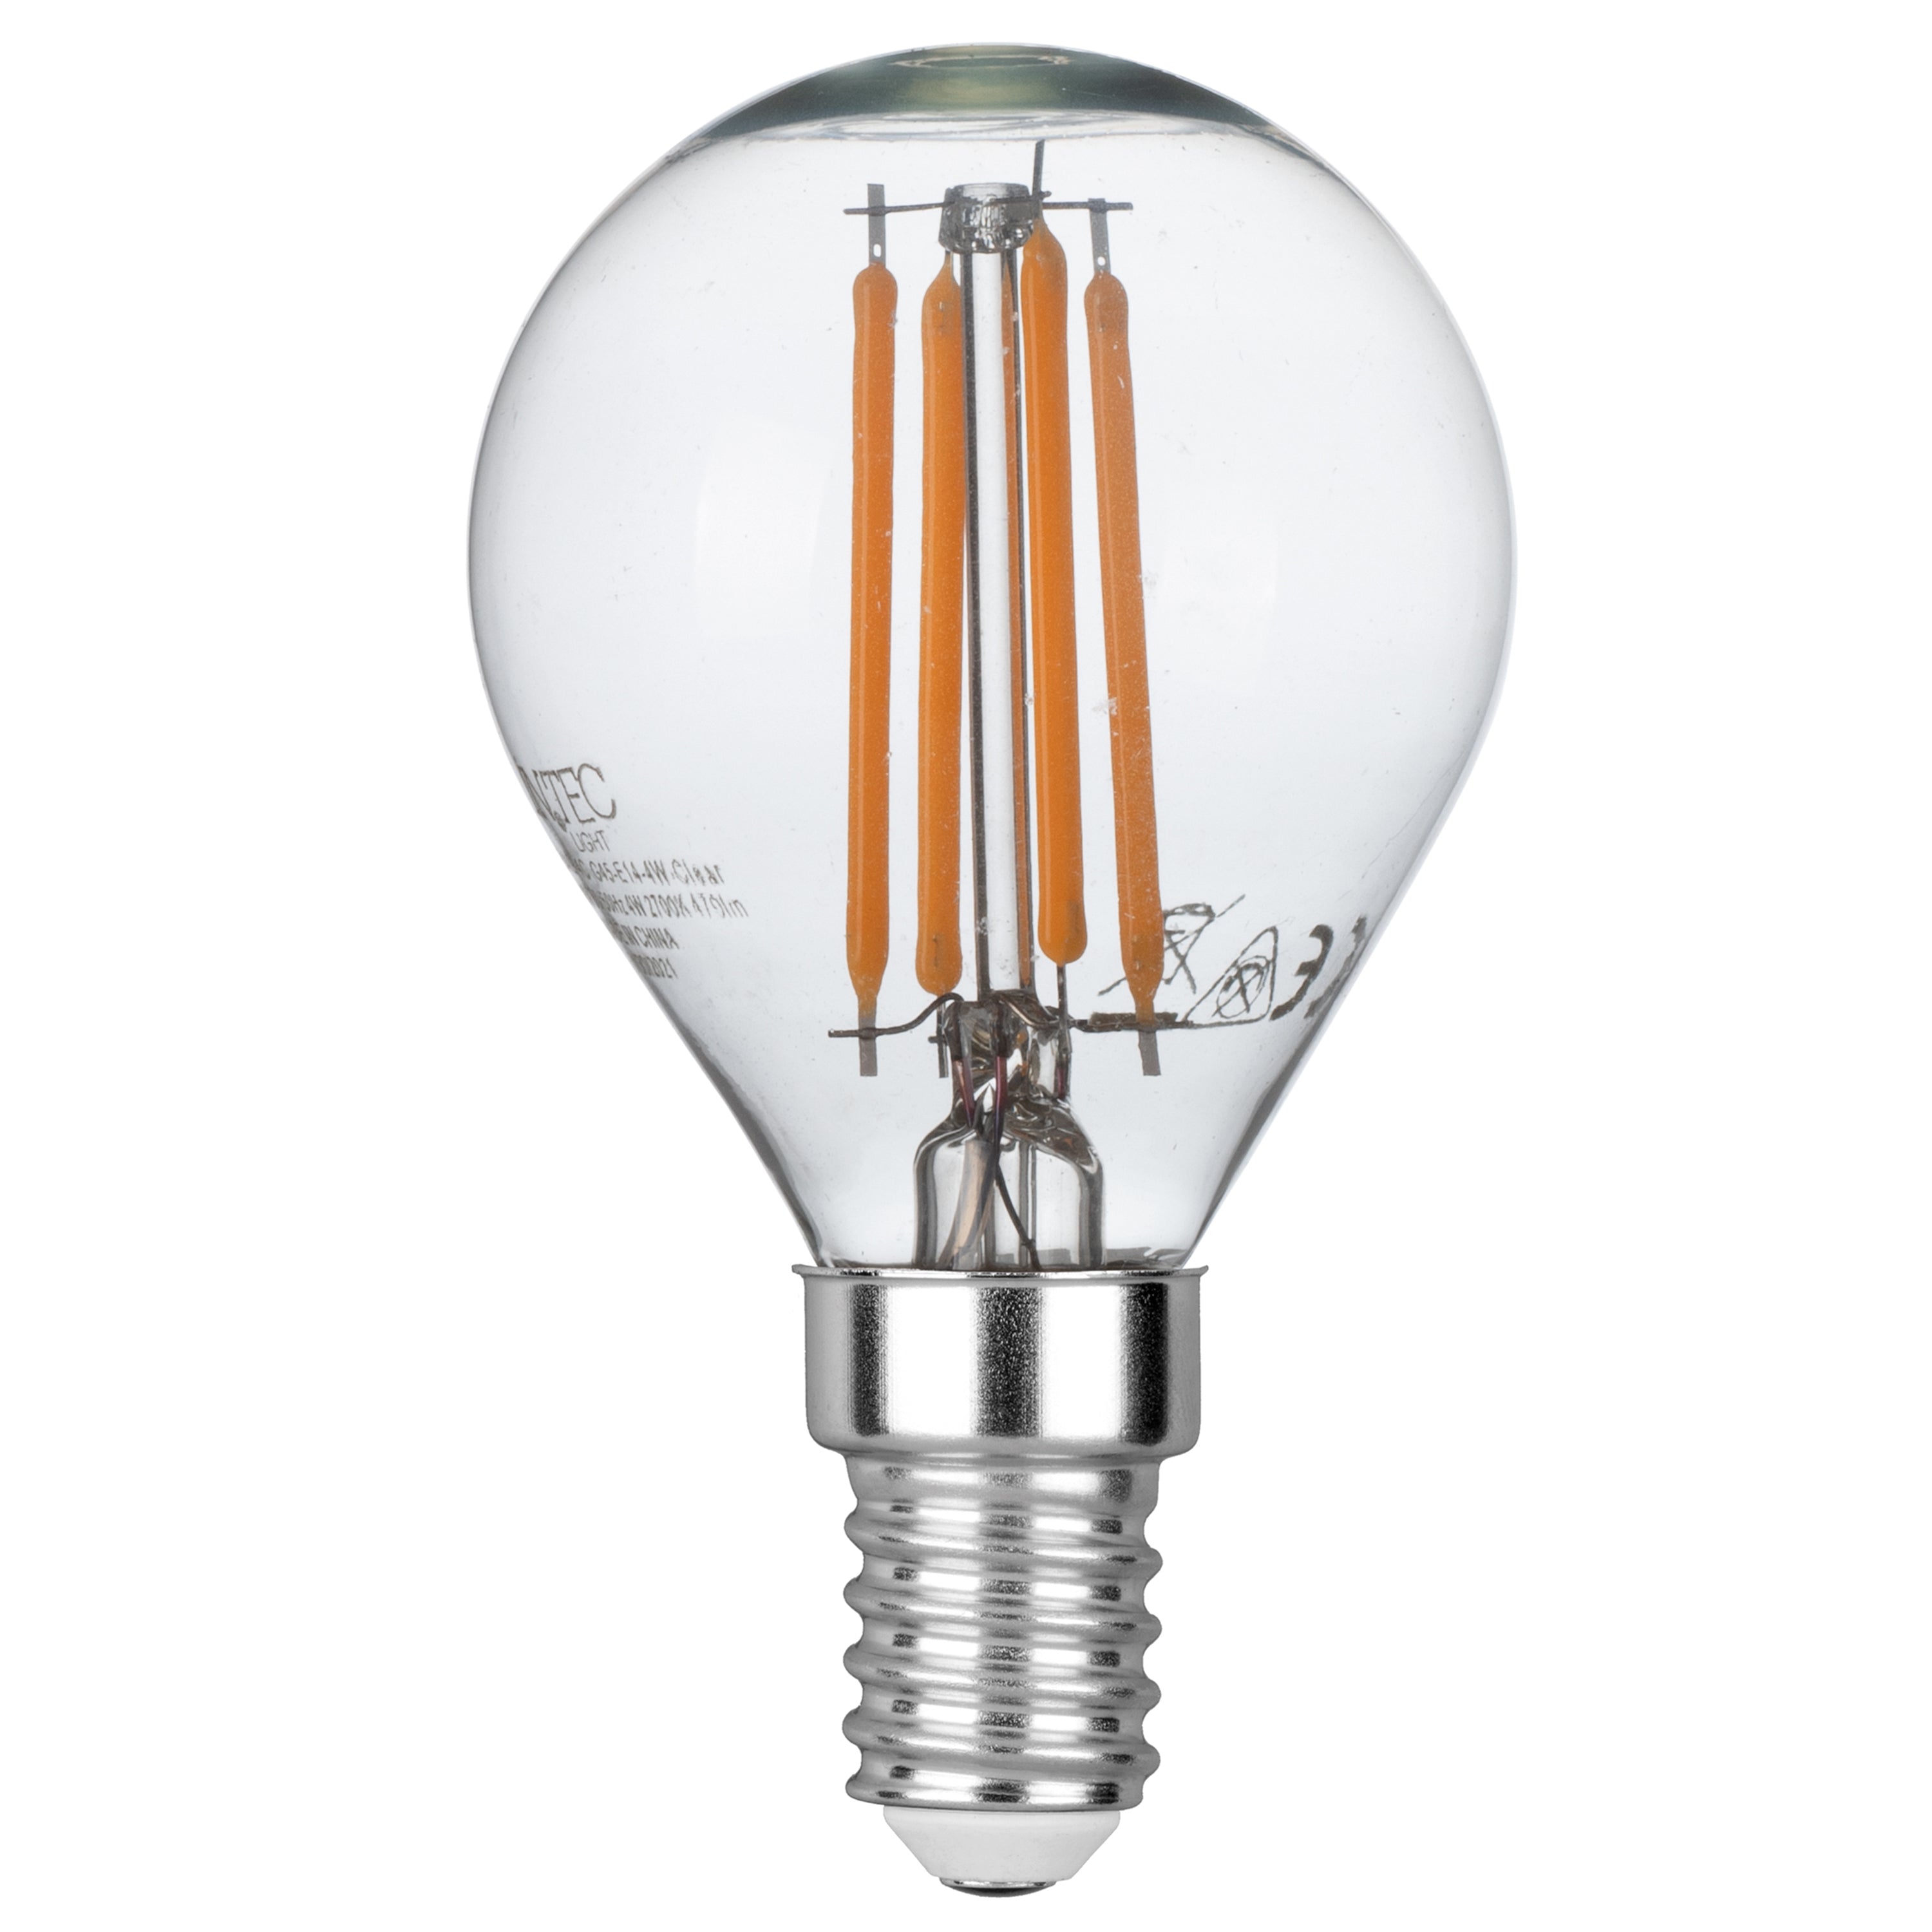 KIT de 3 bombillas LED globo de filamento E14 4W, 470 Lumen 4,5x7,8 cm. 